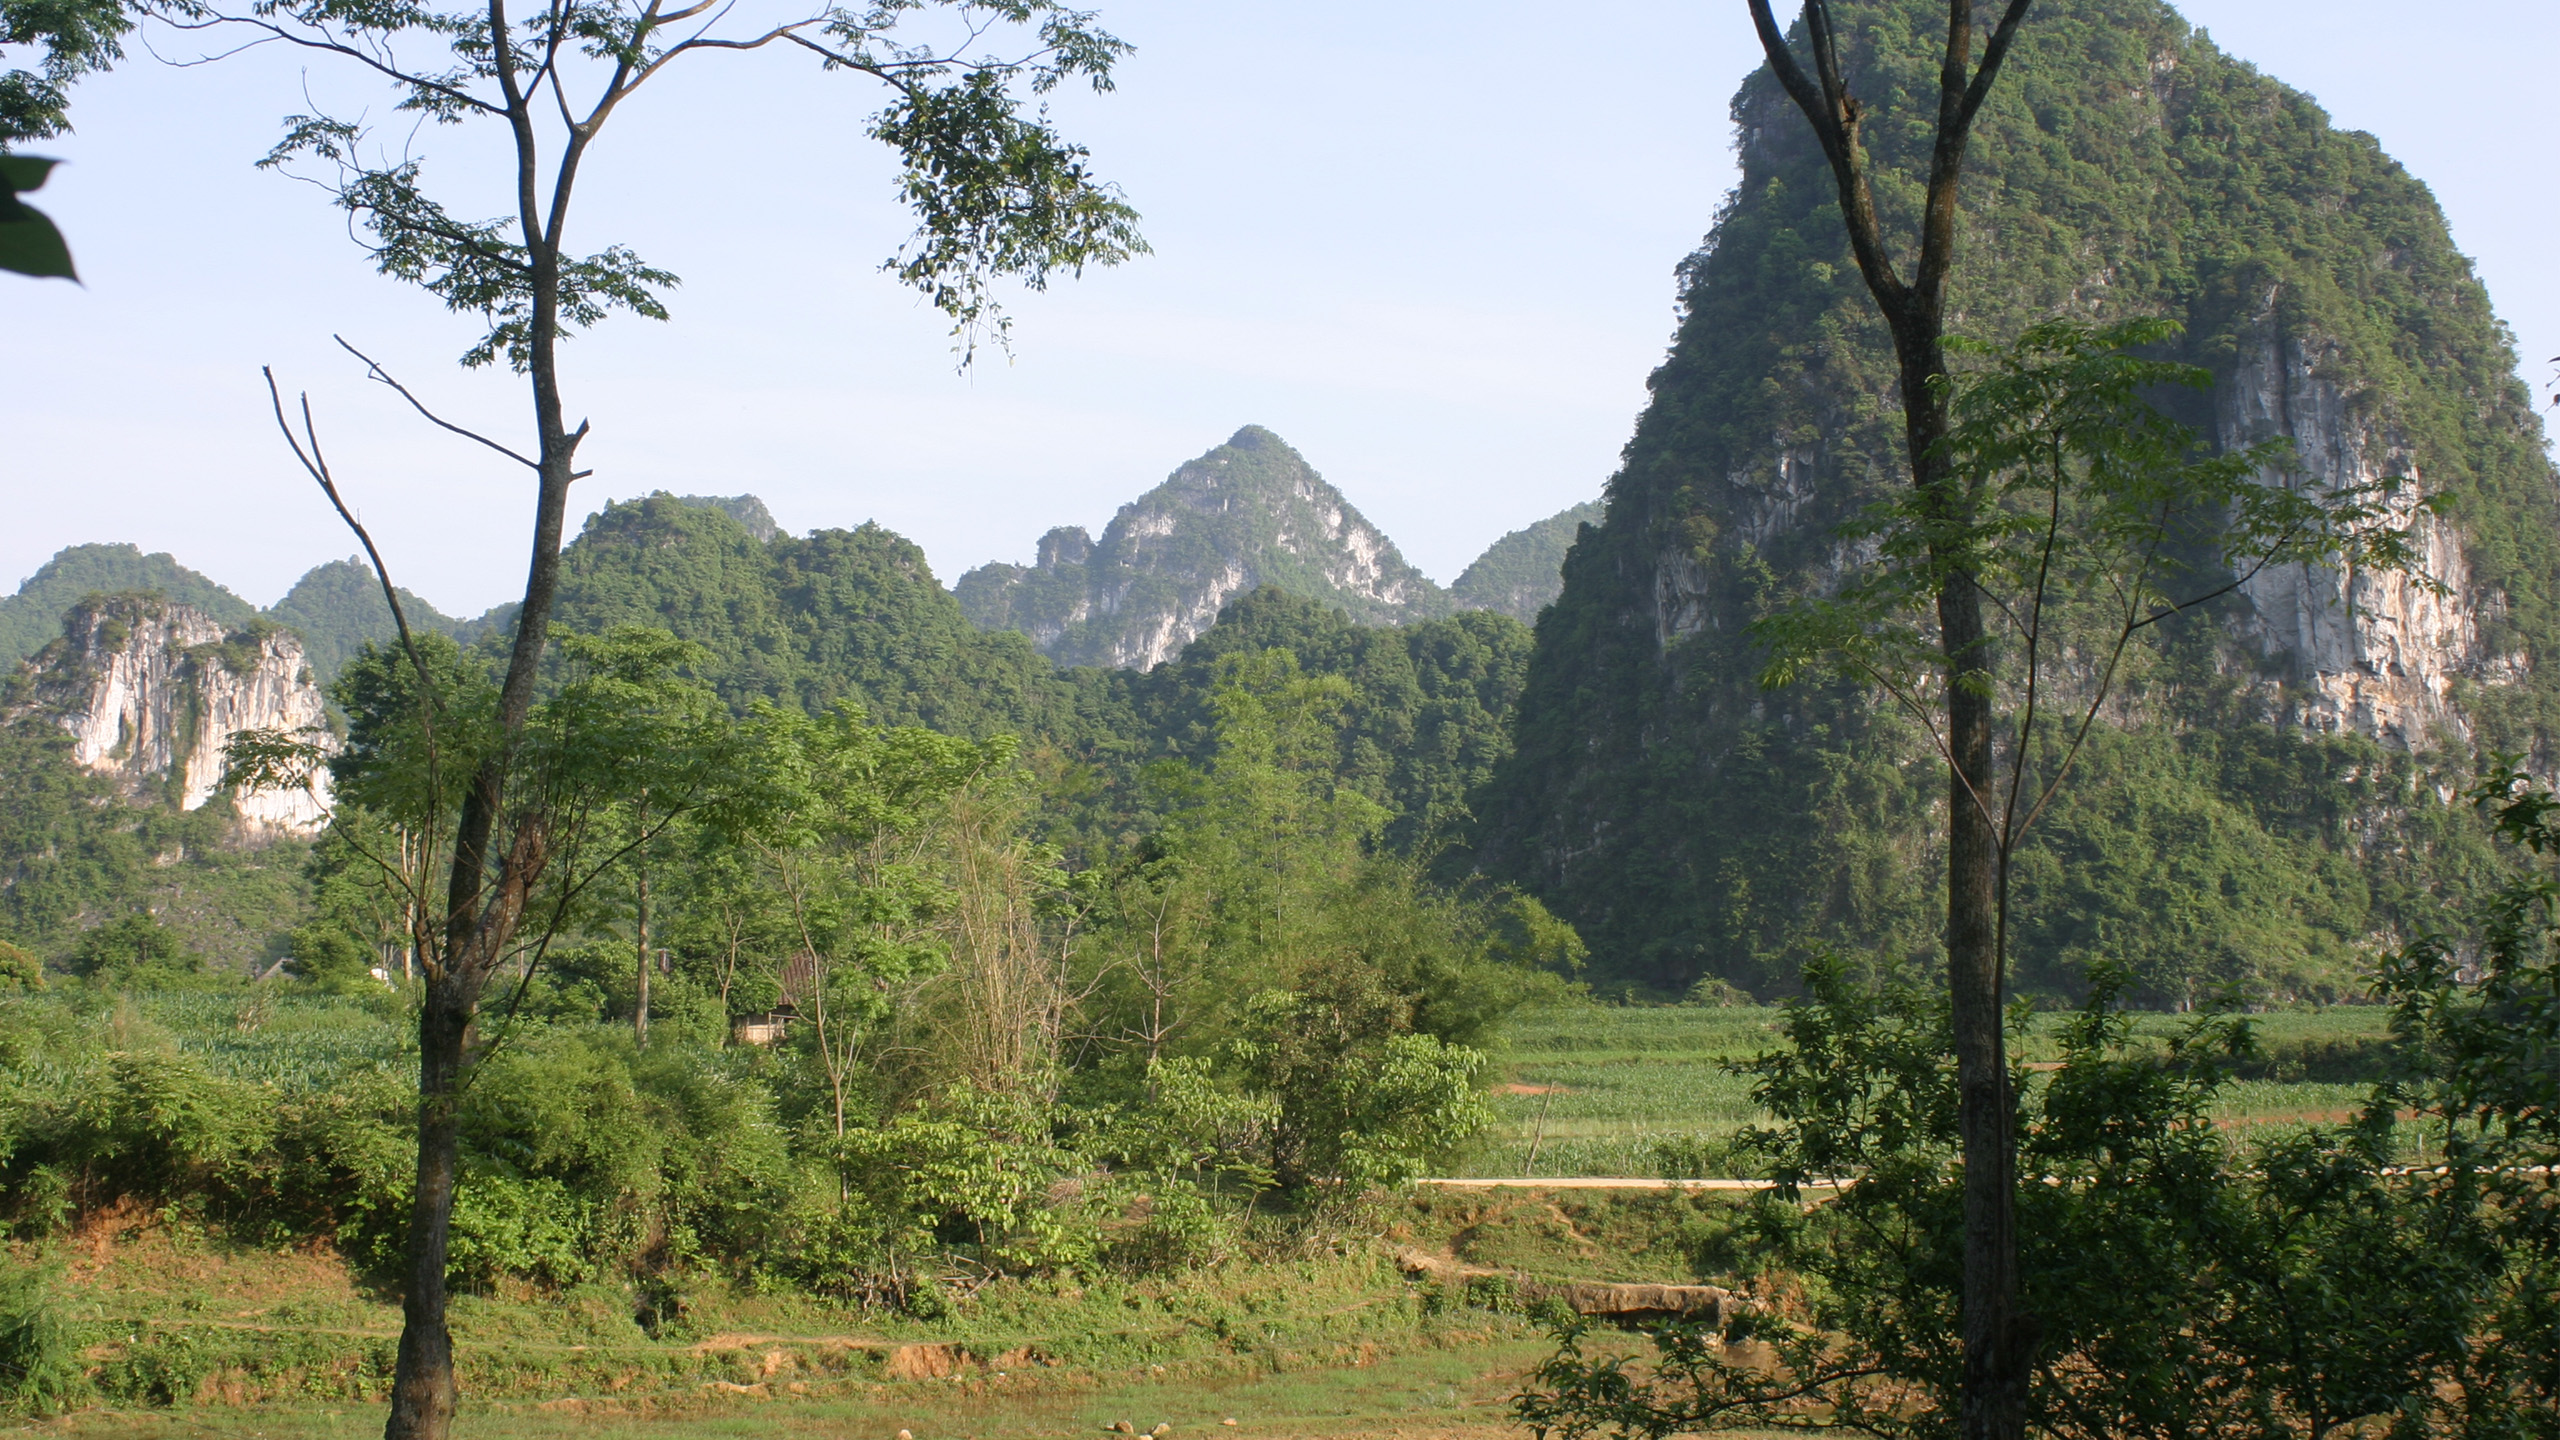 Im Lebensraum von Zieglers Krokodilmolch in der Provinz Cao Bang im Norden Vietnams – die Landschaft ist geprägt von Karst-Felsformationen. | Thomas Ziegler